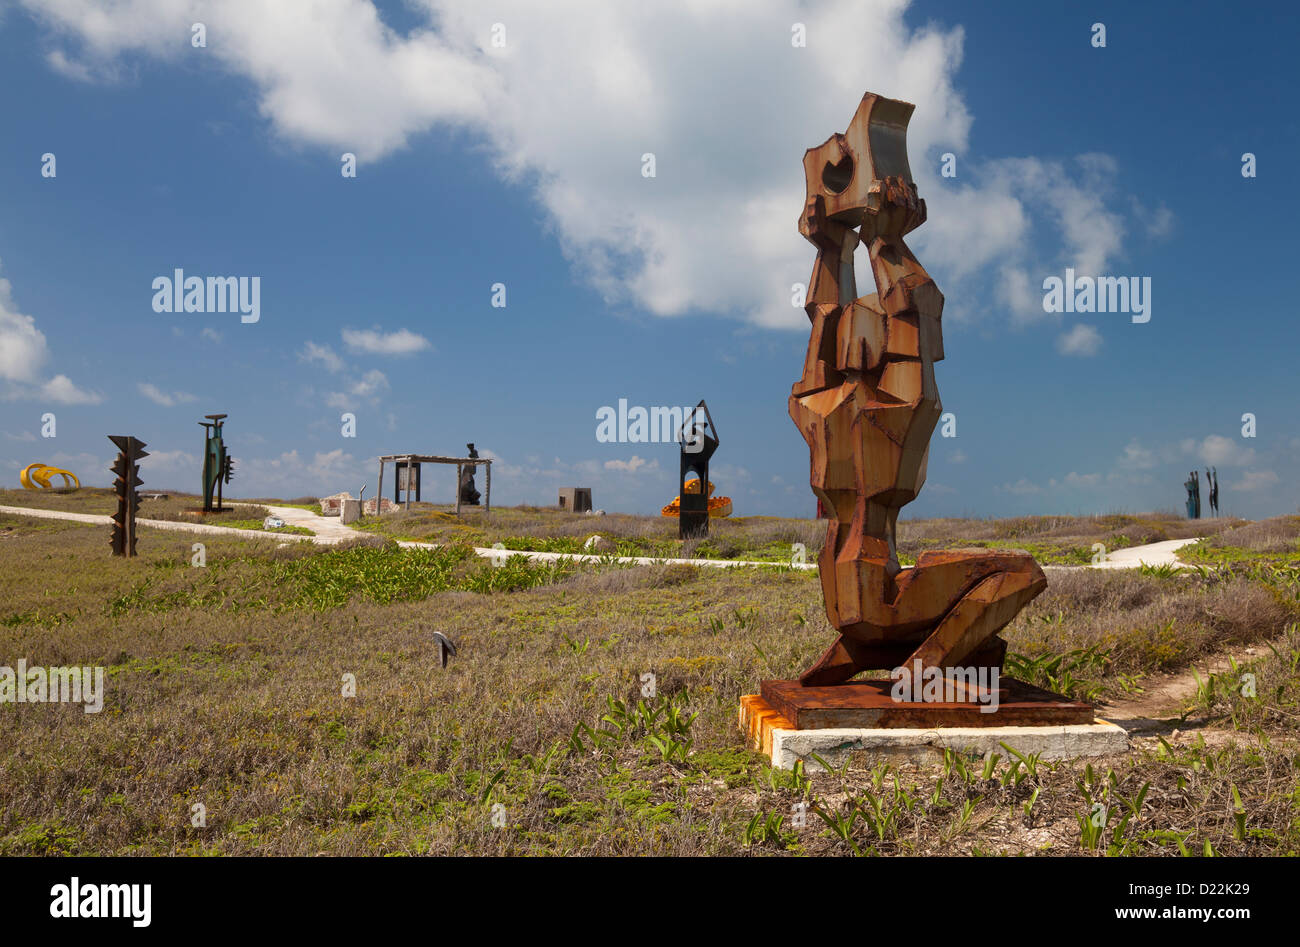 Sculpture Garden At Punta Sur Isla Mujeres Mexico Stock Photo